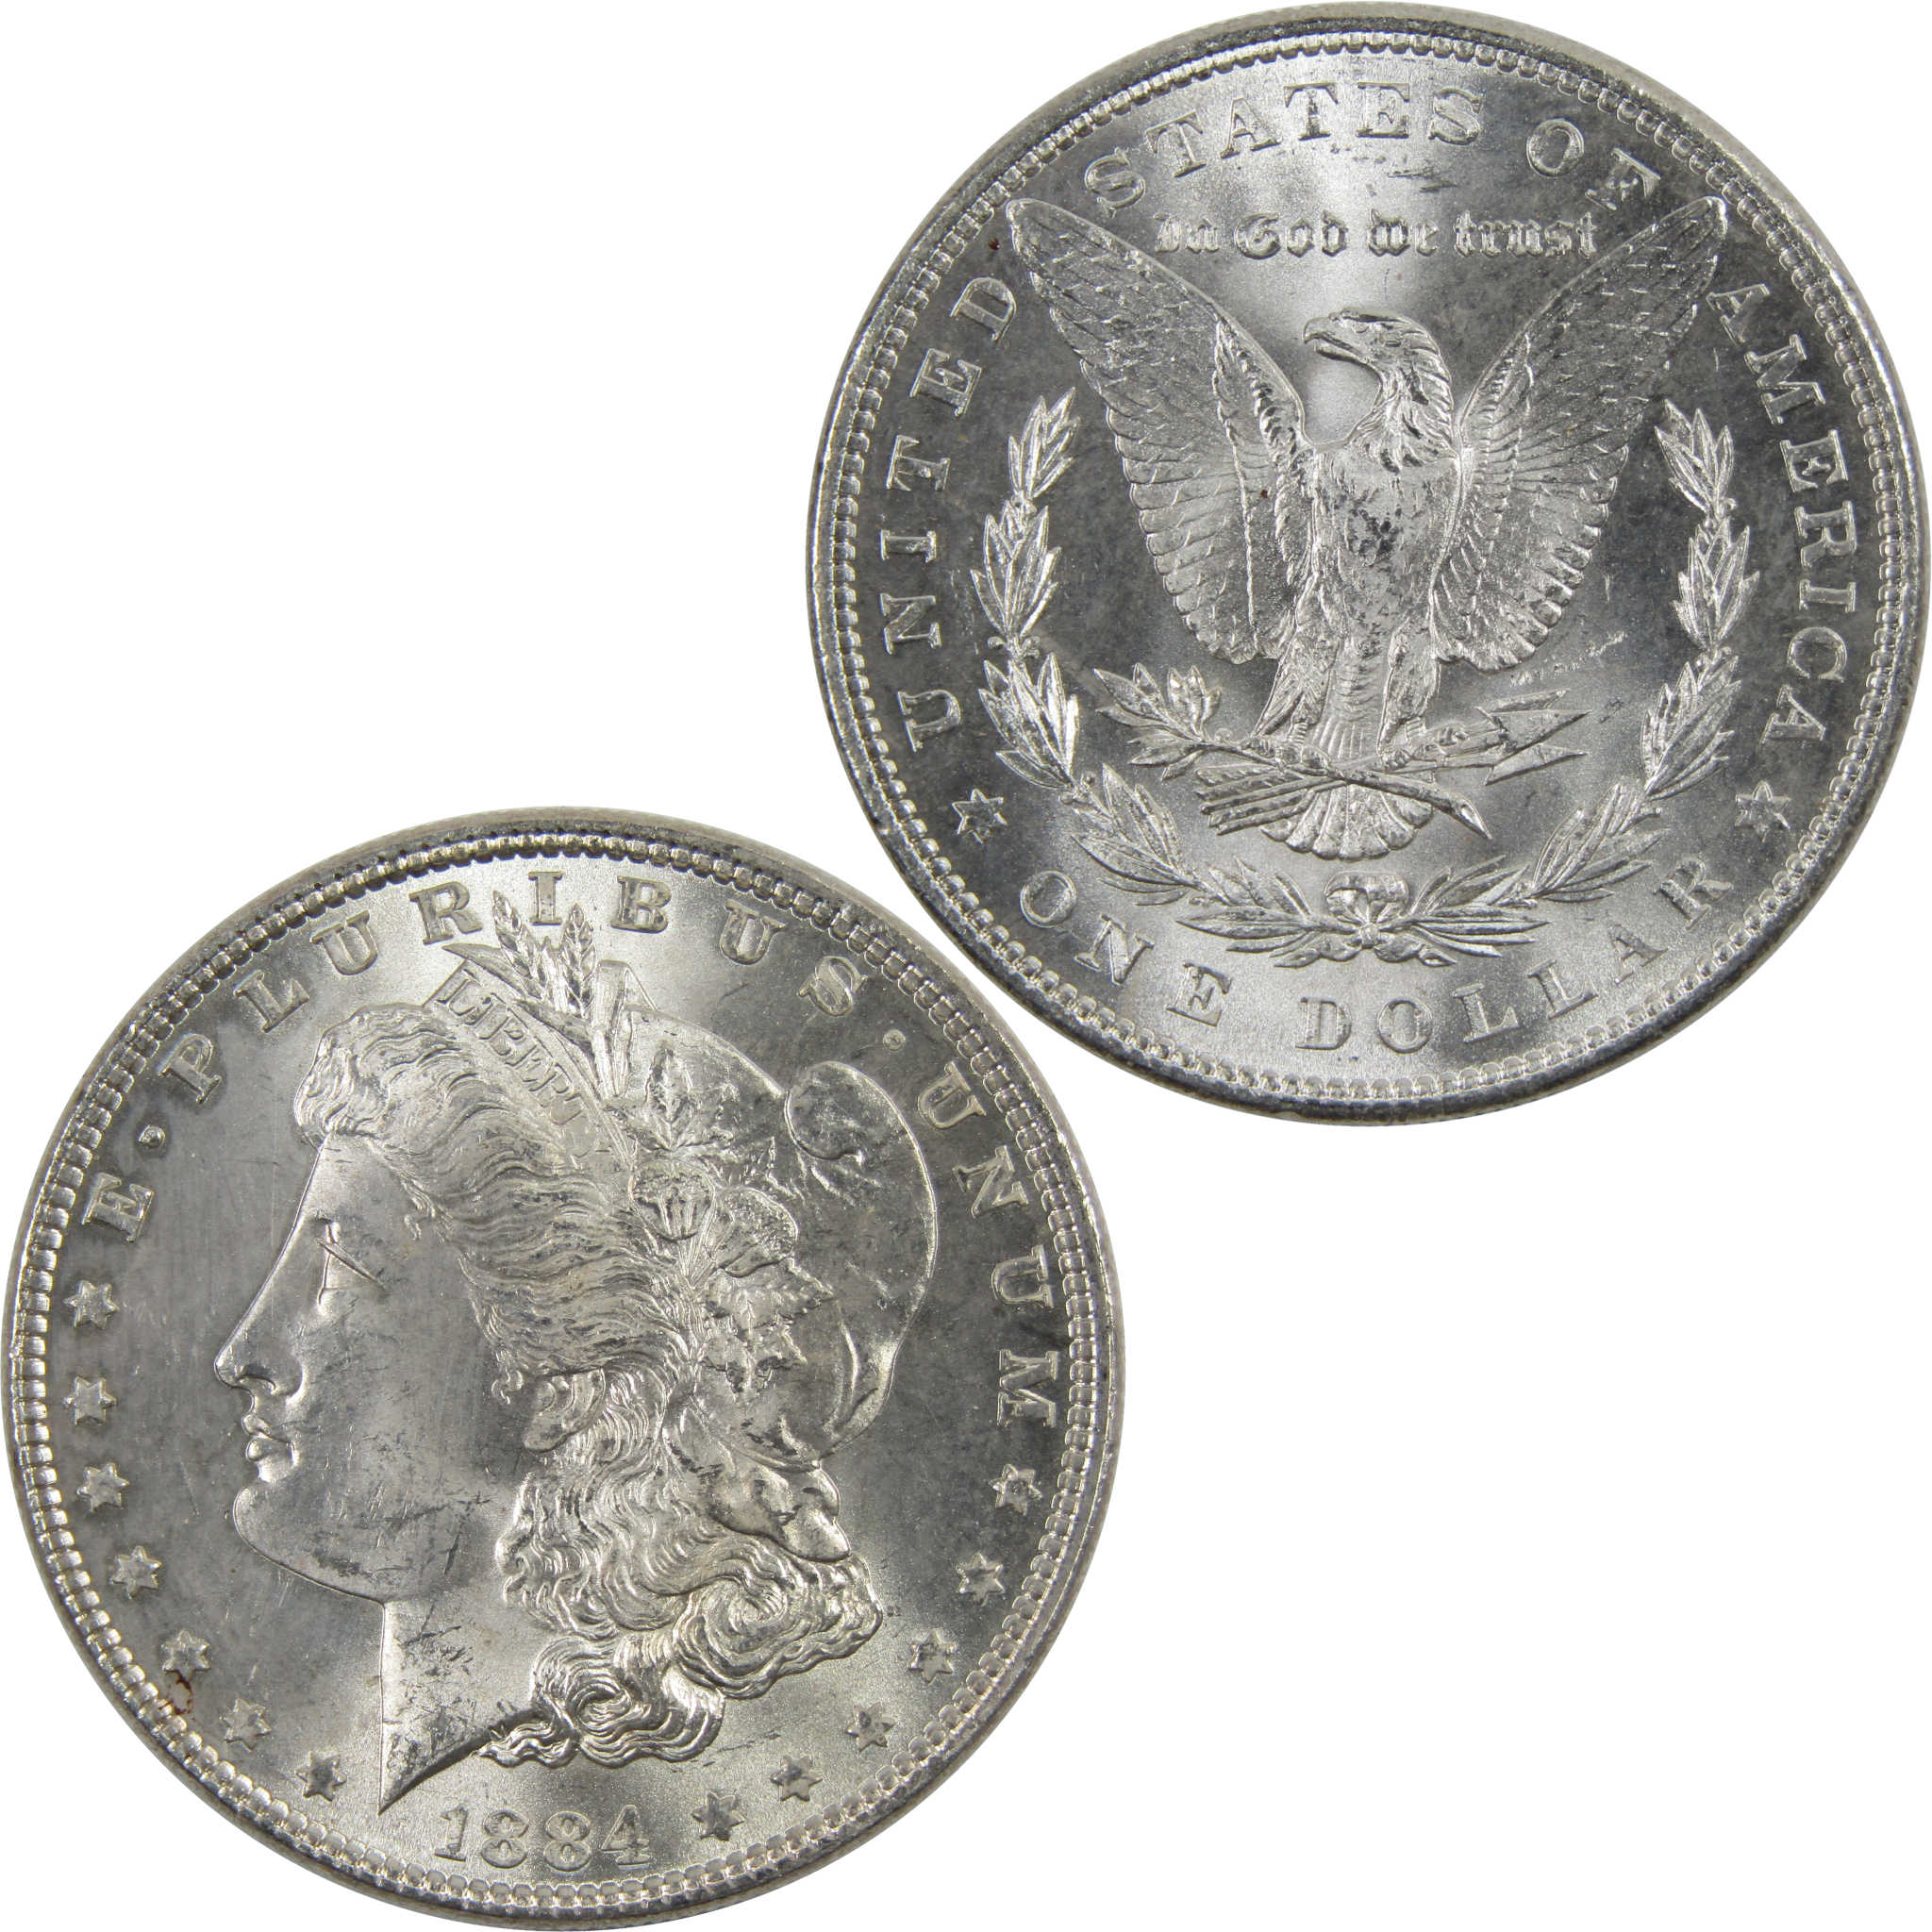 1884 Morgan Dollar BU Uncirculated 90% Silver $1 Coin SKU:I6021 - Morgan coin - Morgan silver dollar - Morgan silver dollar for sale - Profile Coins &amp; Collectibles